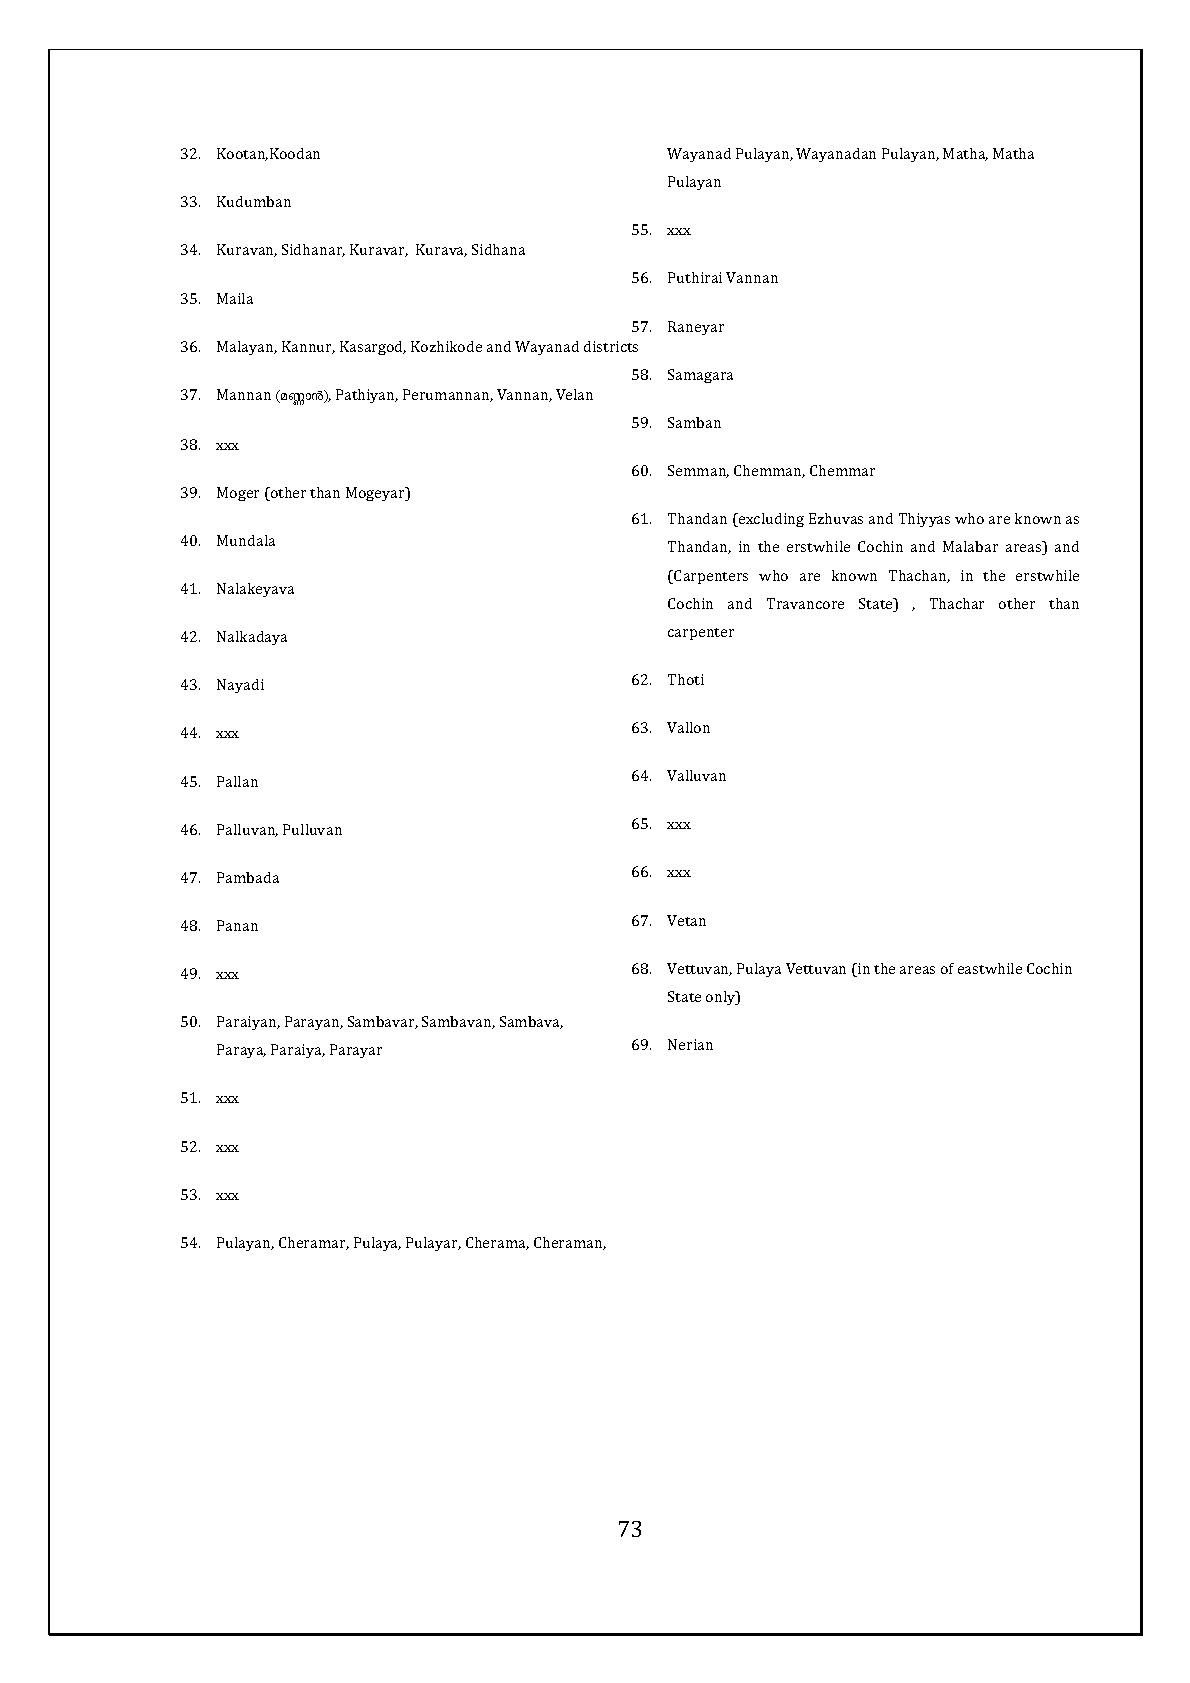 Mahatma Gandhi University Kerala UG Admission 2019 - Notification Image 74